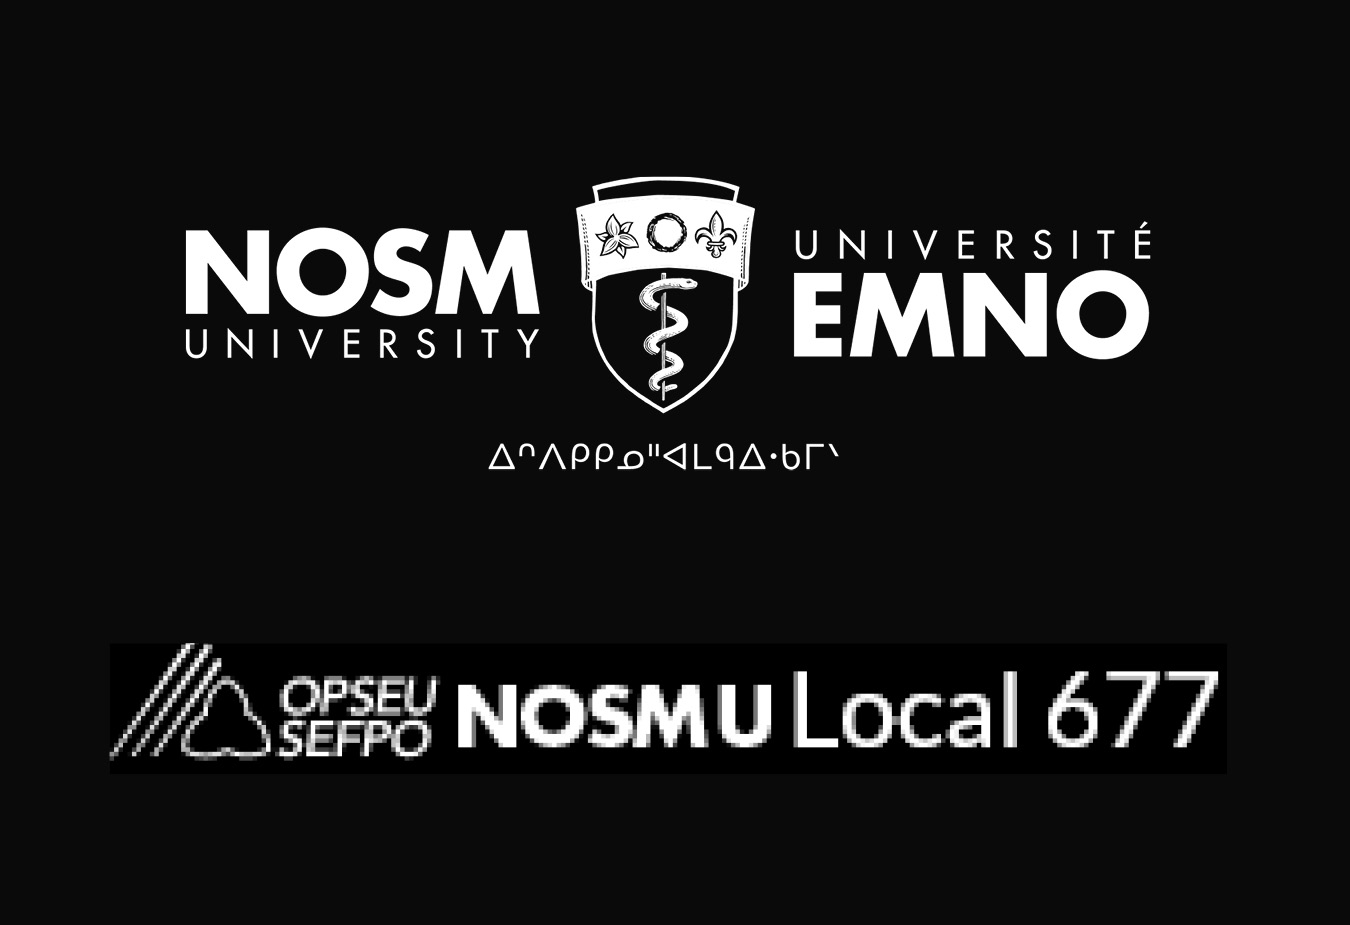 OPSEU 677 and NOSMU